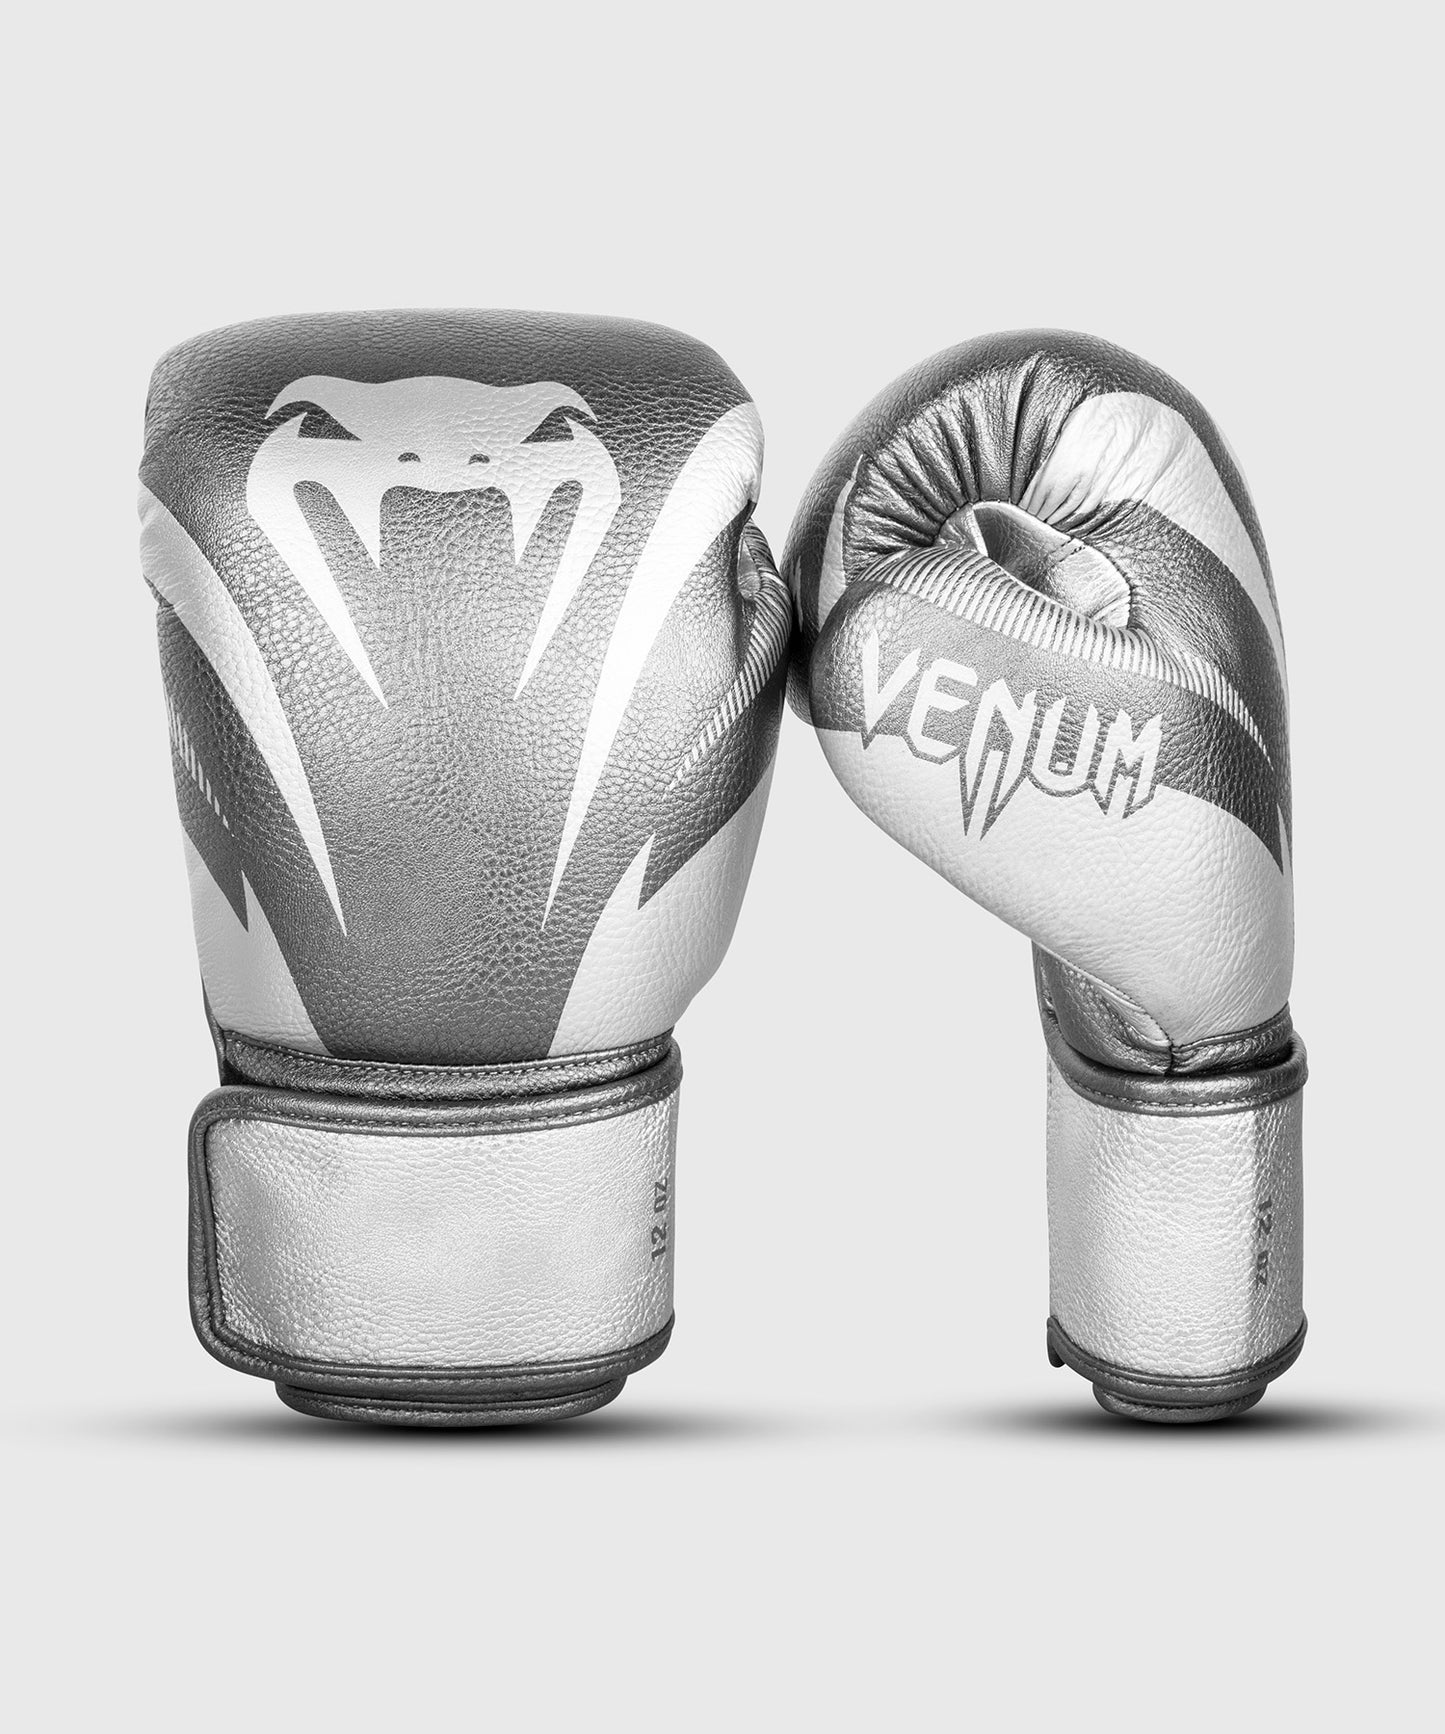 Venum Impact Boxhandschuhe - Silber/Silber